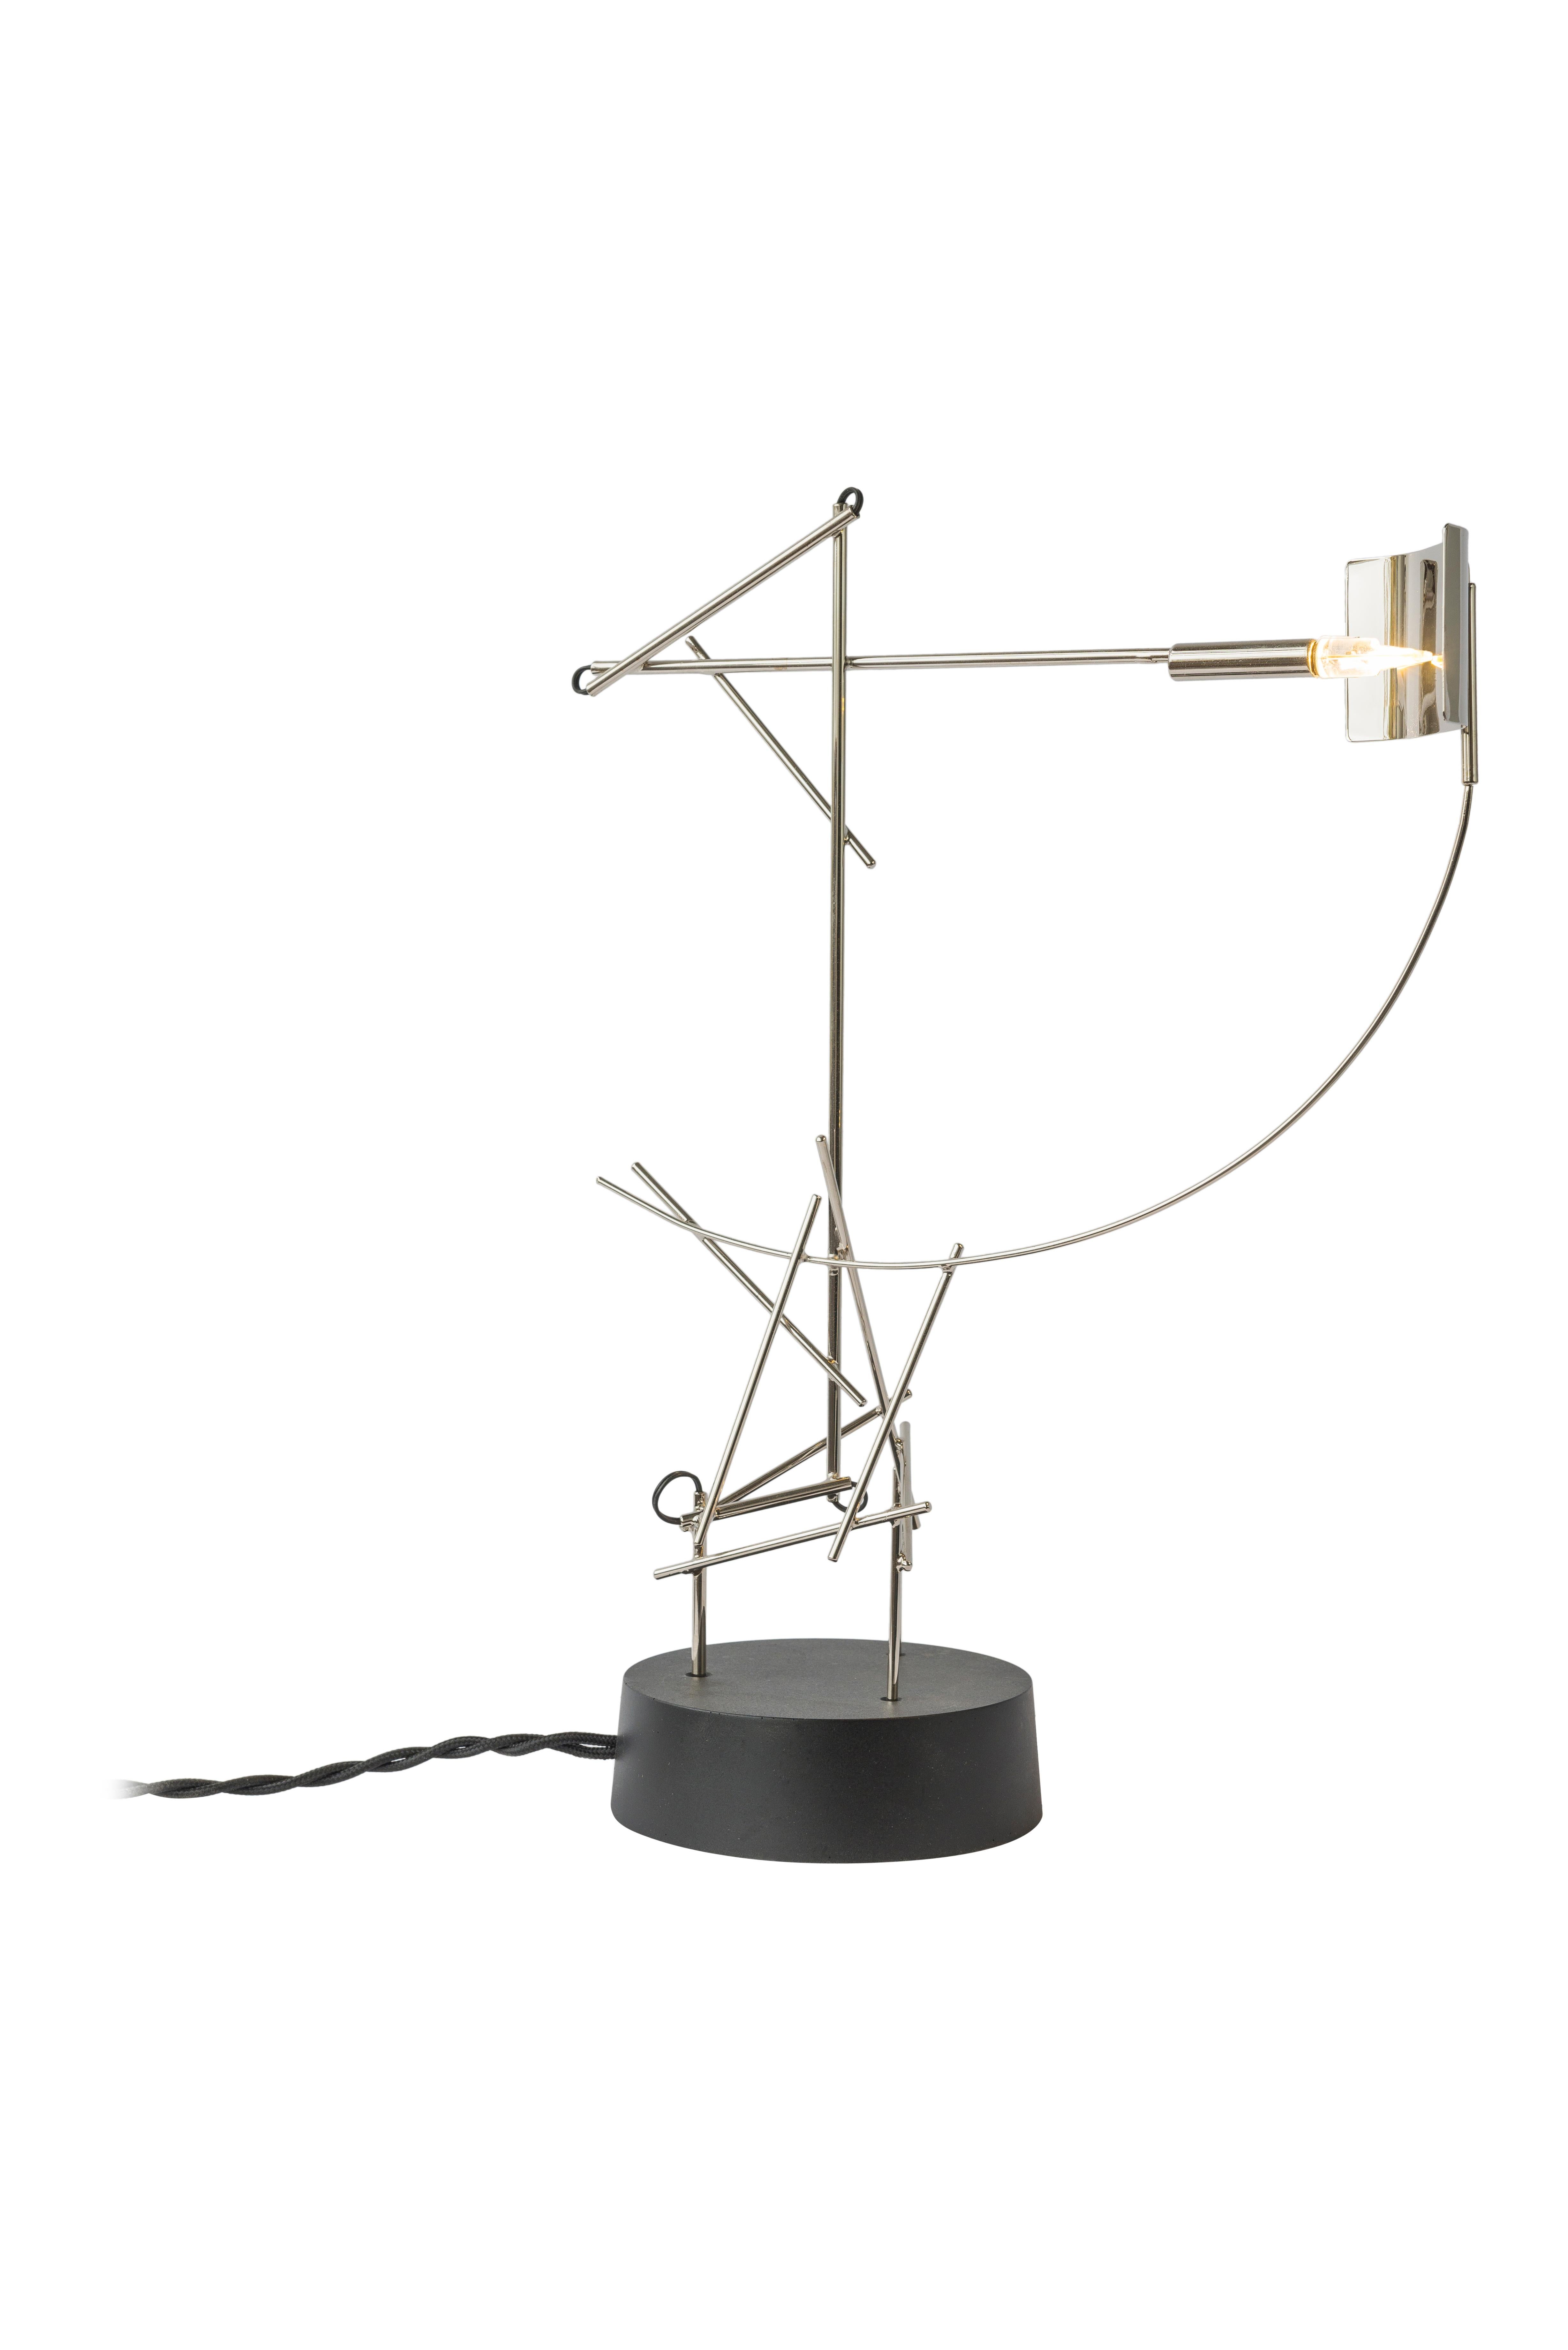 Tinkering Lamps ist eine Kollektion von minimalistischen und stilisierten Tischlampen, bei denen Joost mit ungewöhnlichen Möglichkeiten, Licht einzufangen, zu reflektieren und zu zeigen, experimentiert hat. In Joosts Werkstatt erfüllt das Geräusch